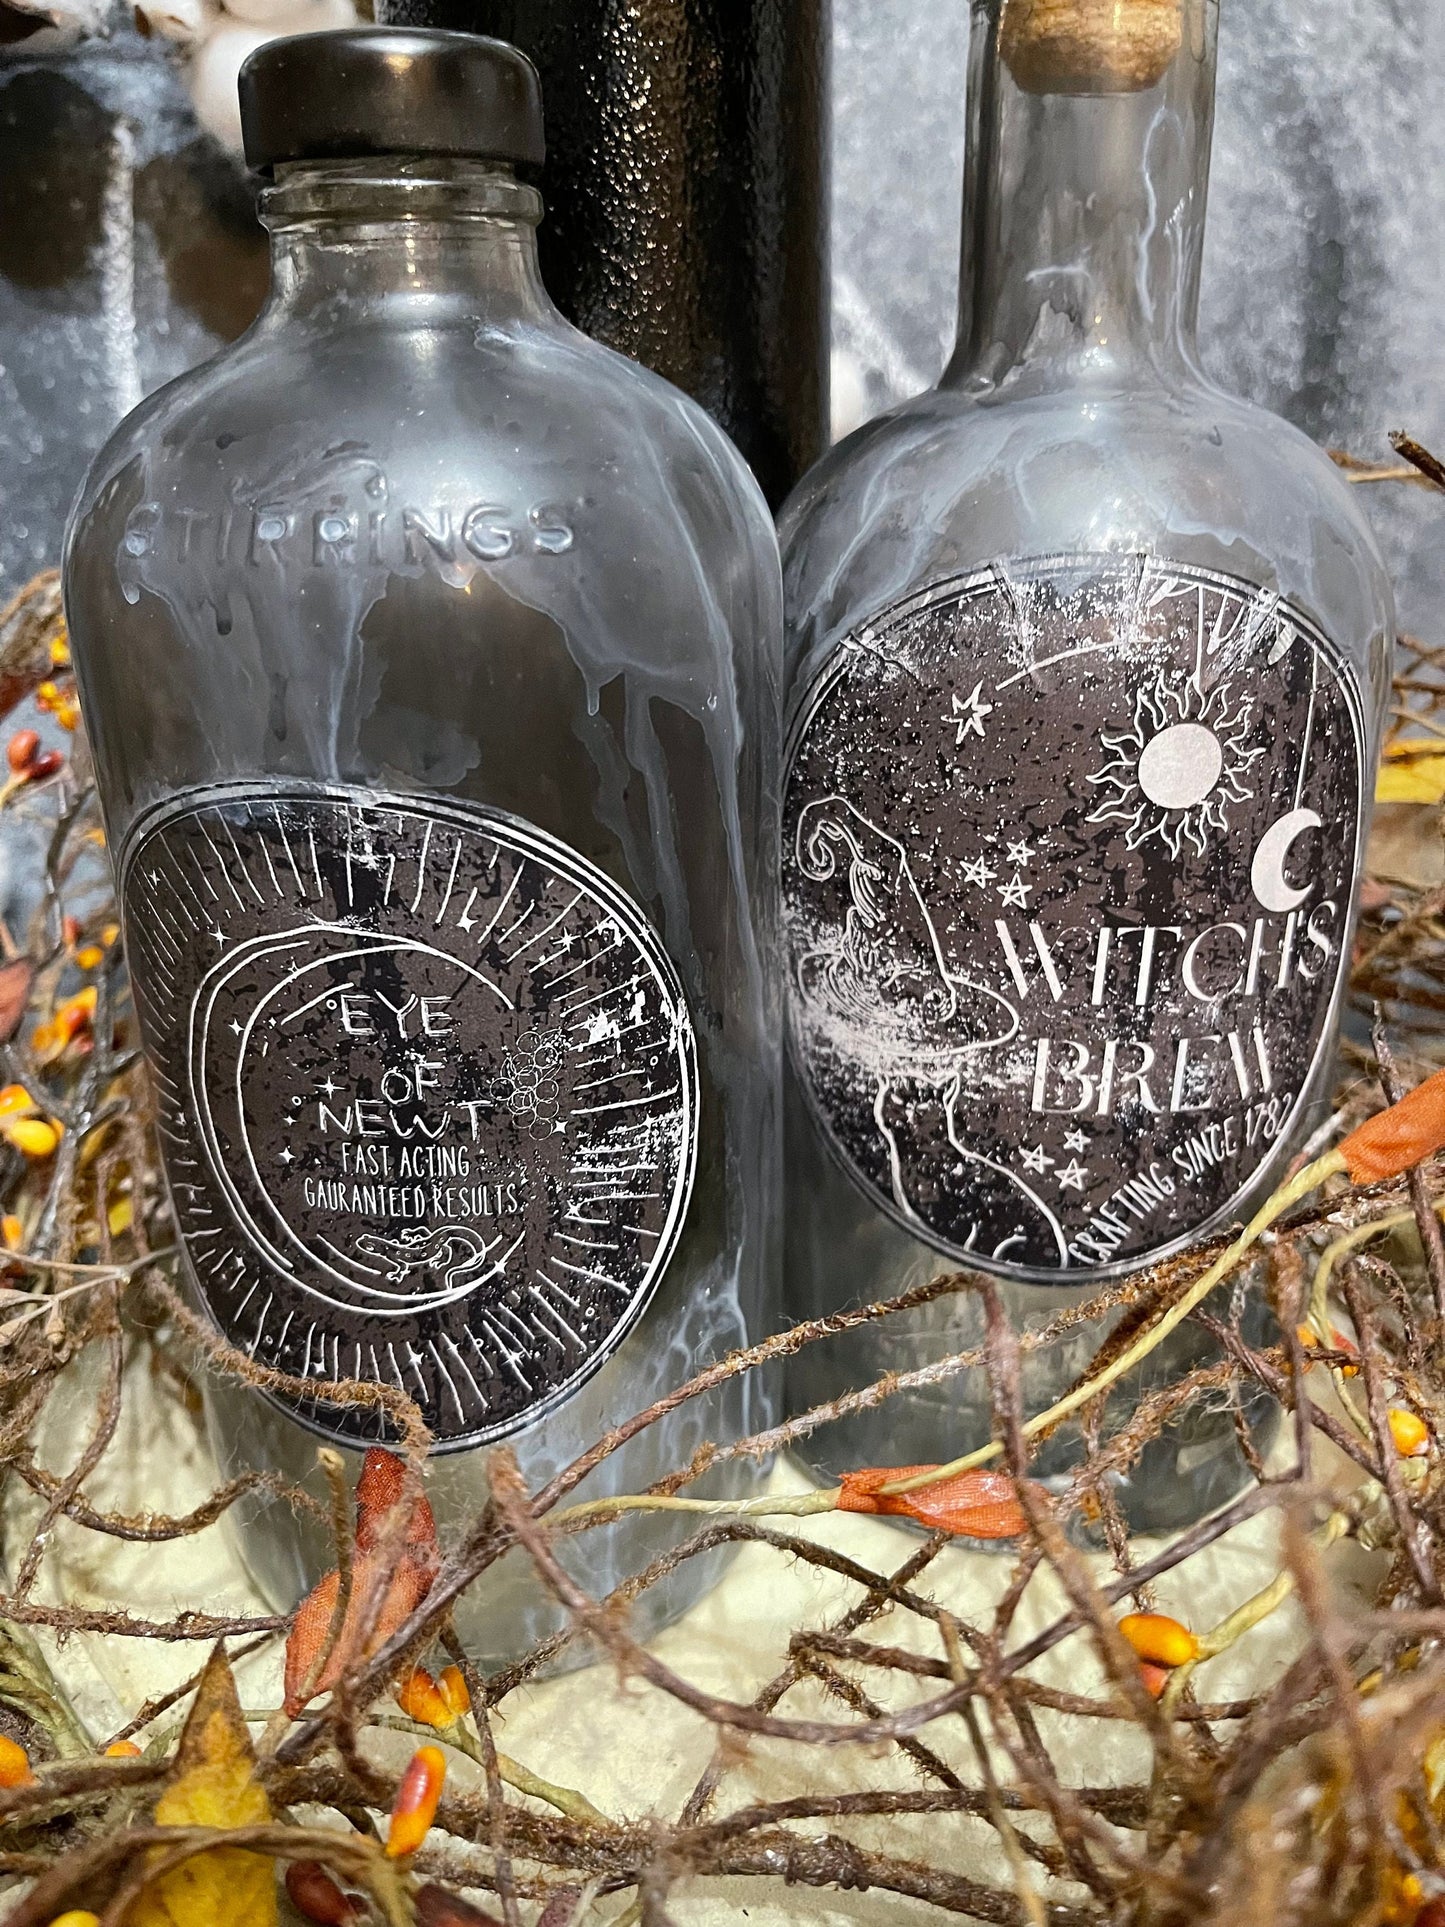 halloween bottle, Magic potion bottle, Witches brew bottle,Spider venom bottle, eye of newt bottle, Lighted bottle.